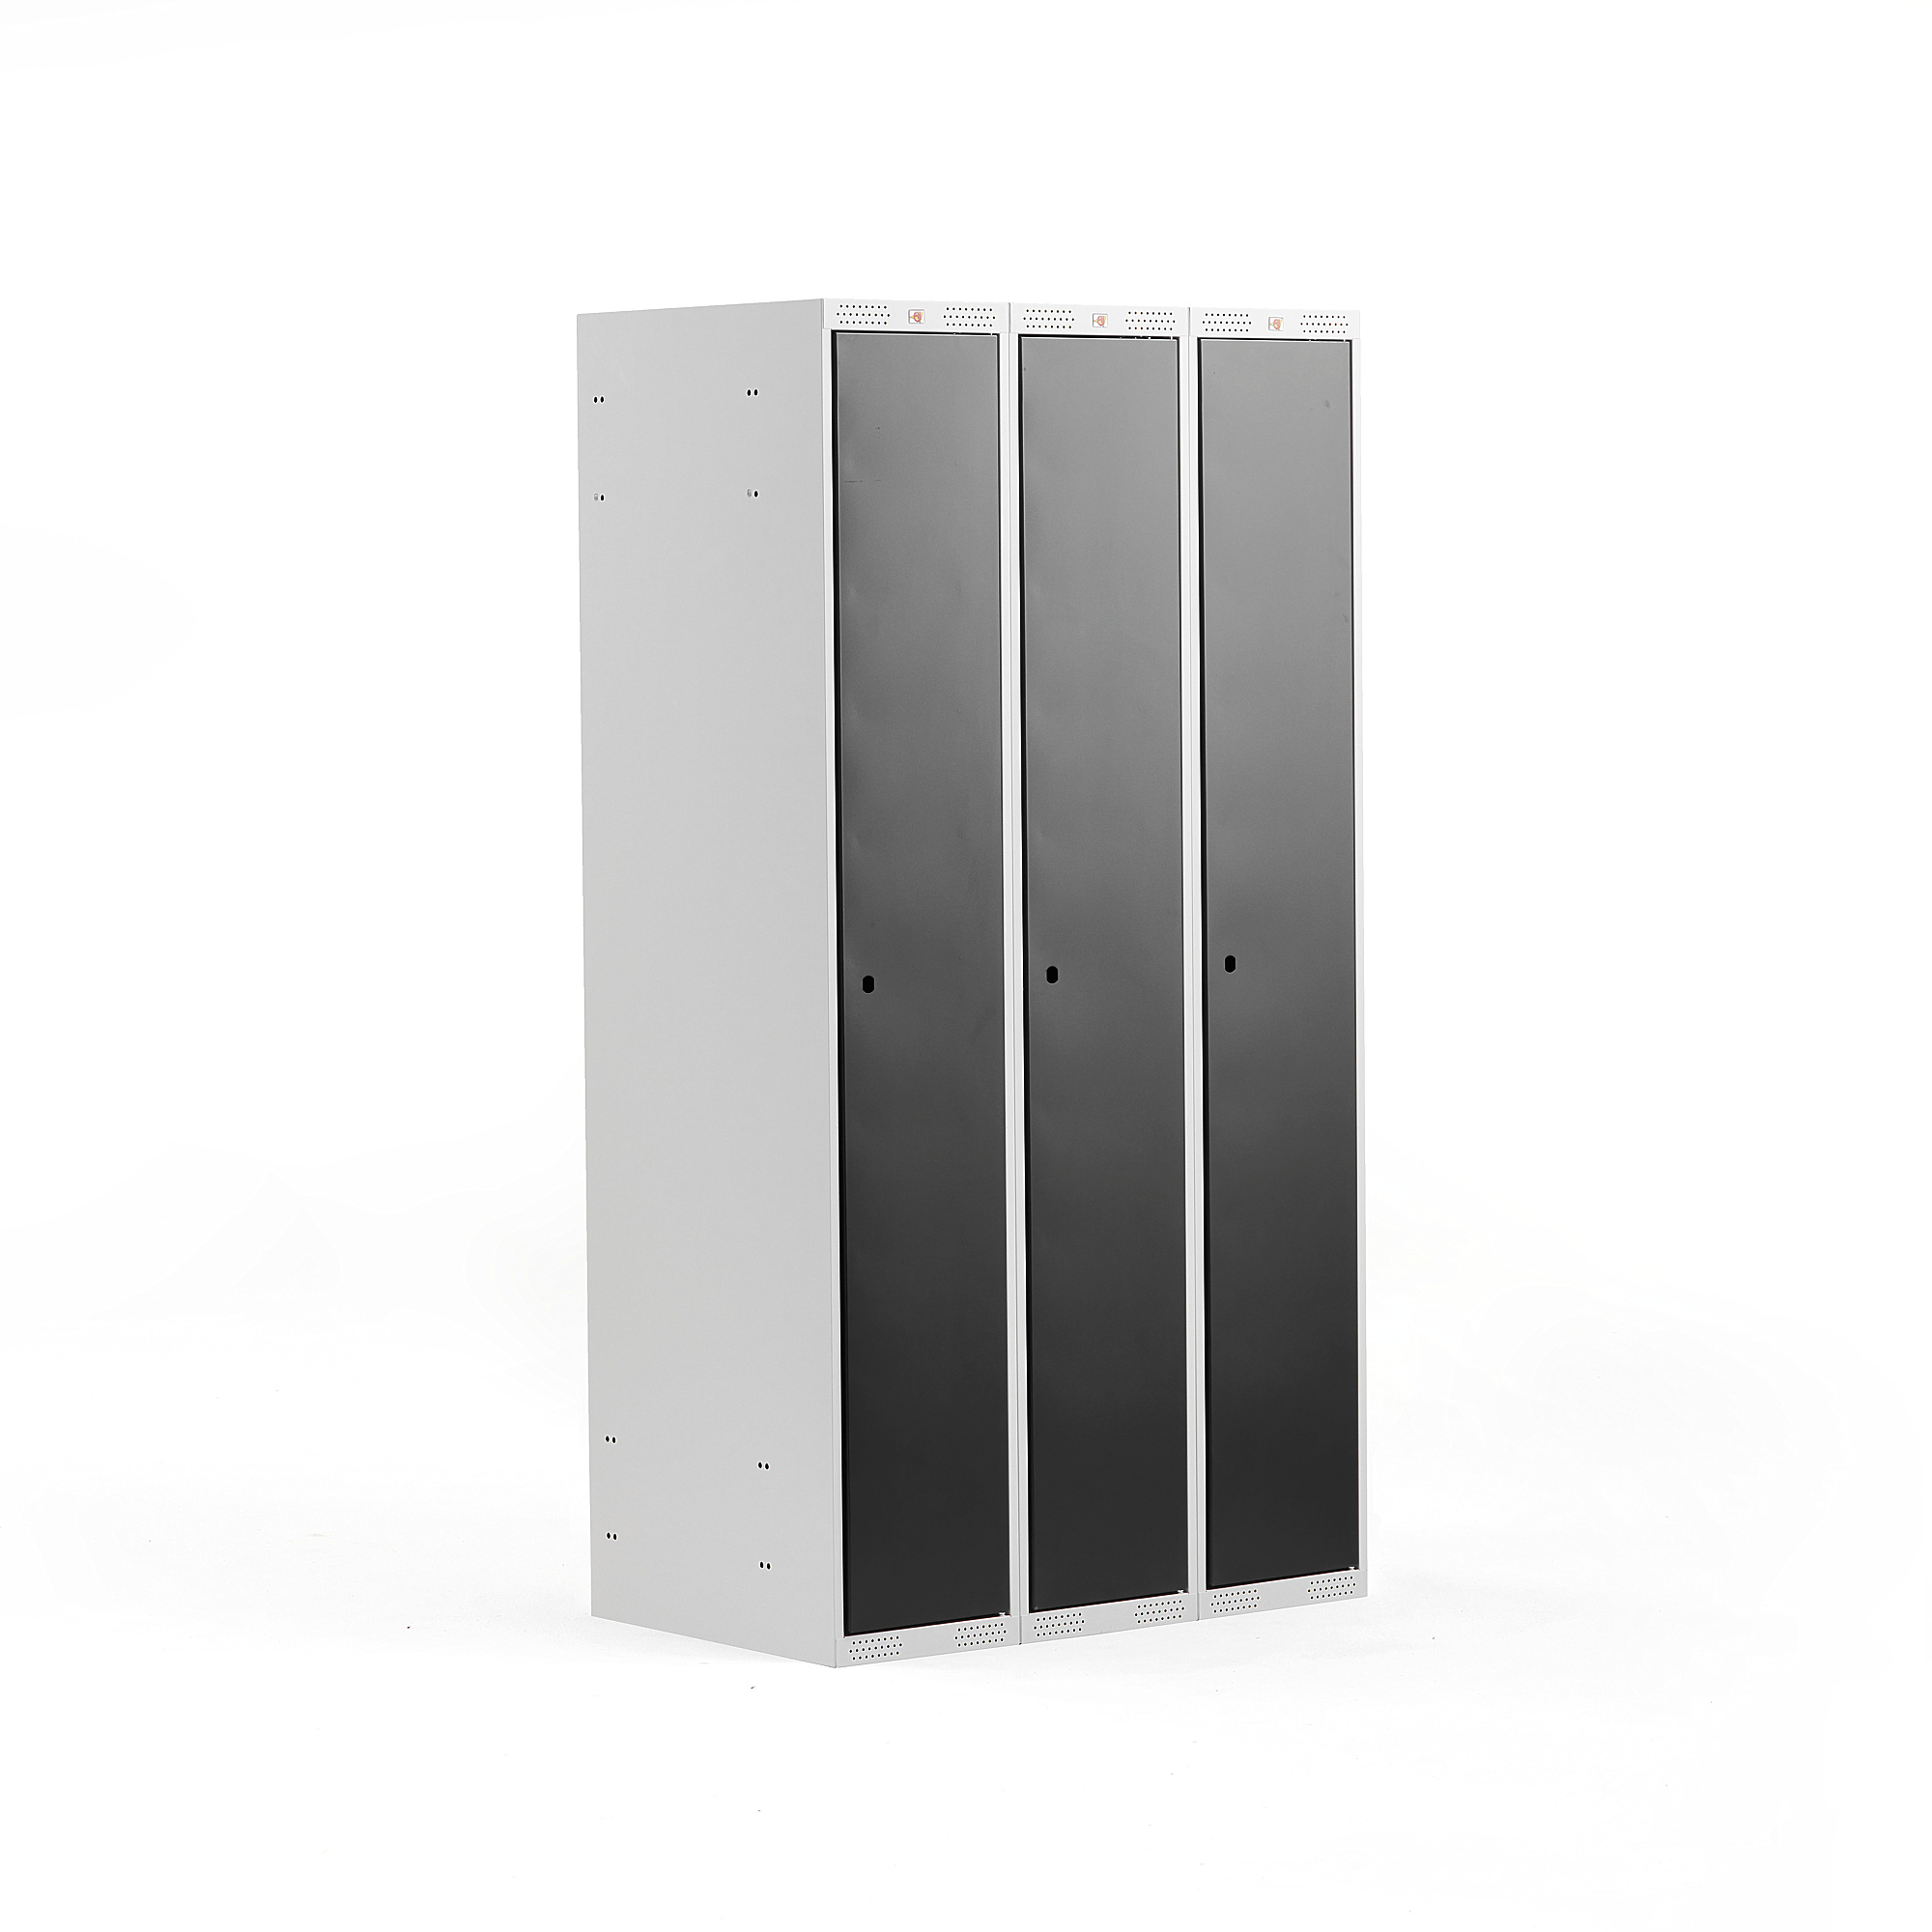 Šatní skříňka CLASSIC, 3 sekce, 1740x900x550 mm, šedá, černé dveře